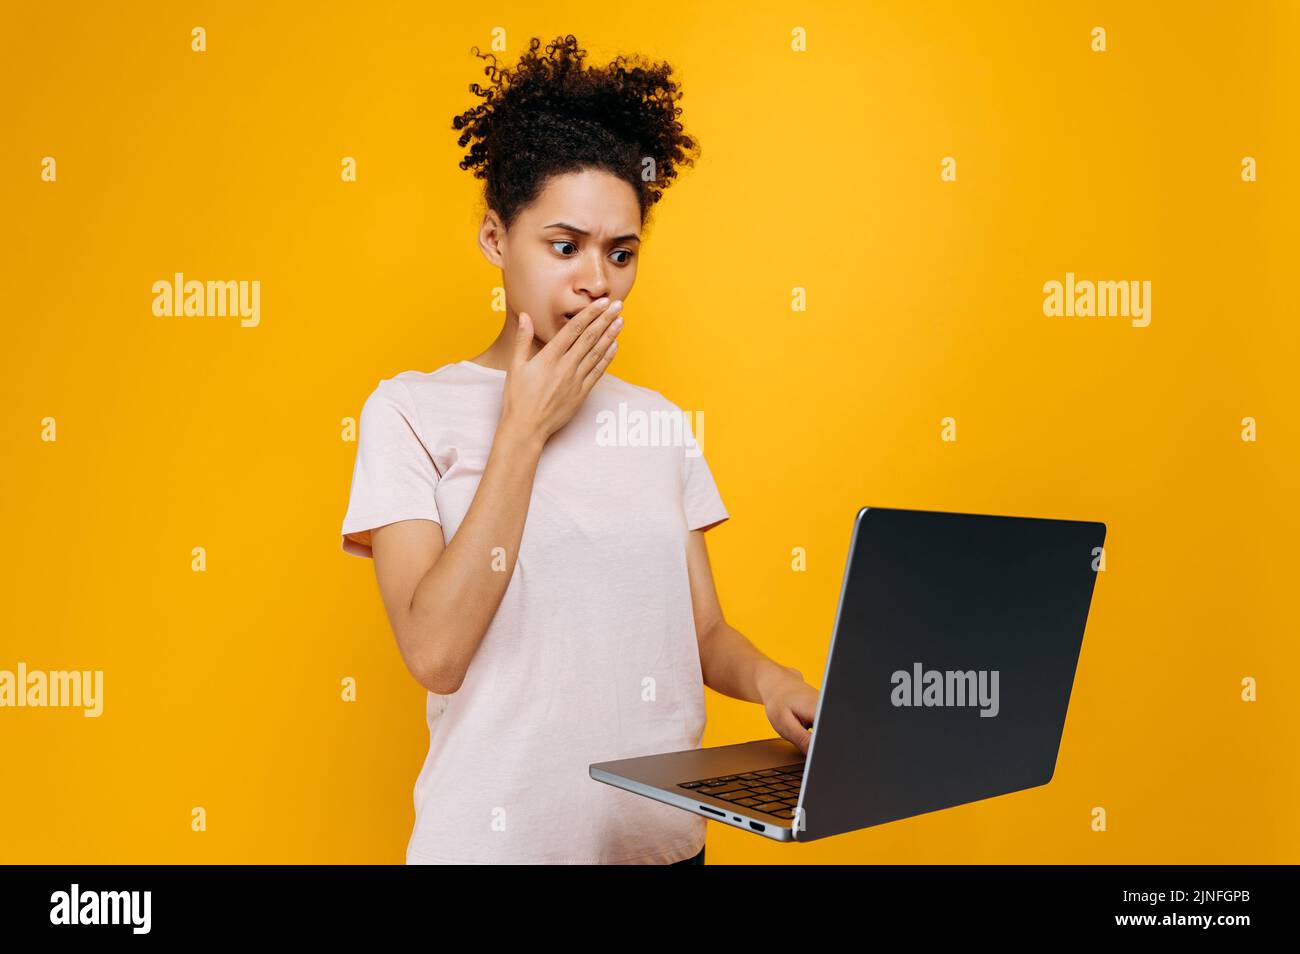 Verblüfft afroamerikanische junge Frau mit lockigen Haaren, blickt überrascht auf den Laptop-Bildschirm, sah unerwartete Nachrichten, steht über isoliertem orangefarbenem Hintergrund, emotionalem Gesichtsausdruck, der ihren Mund bedeckt Stockfoto